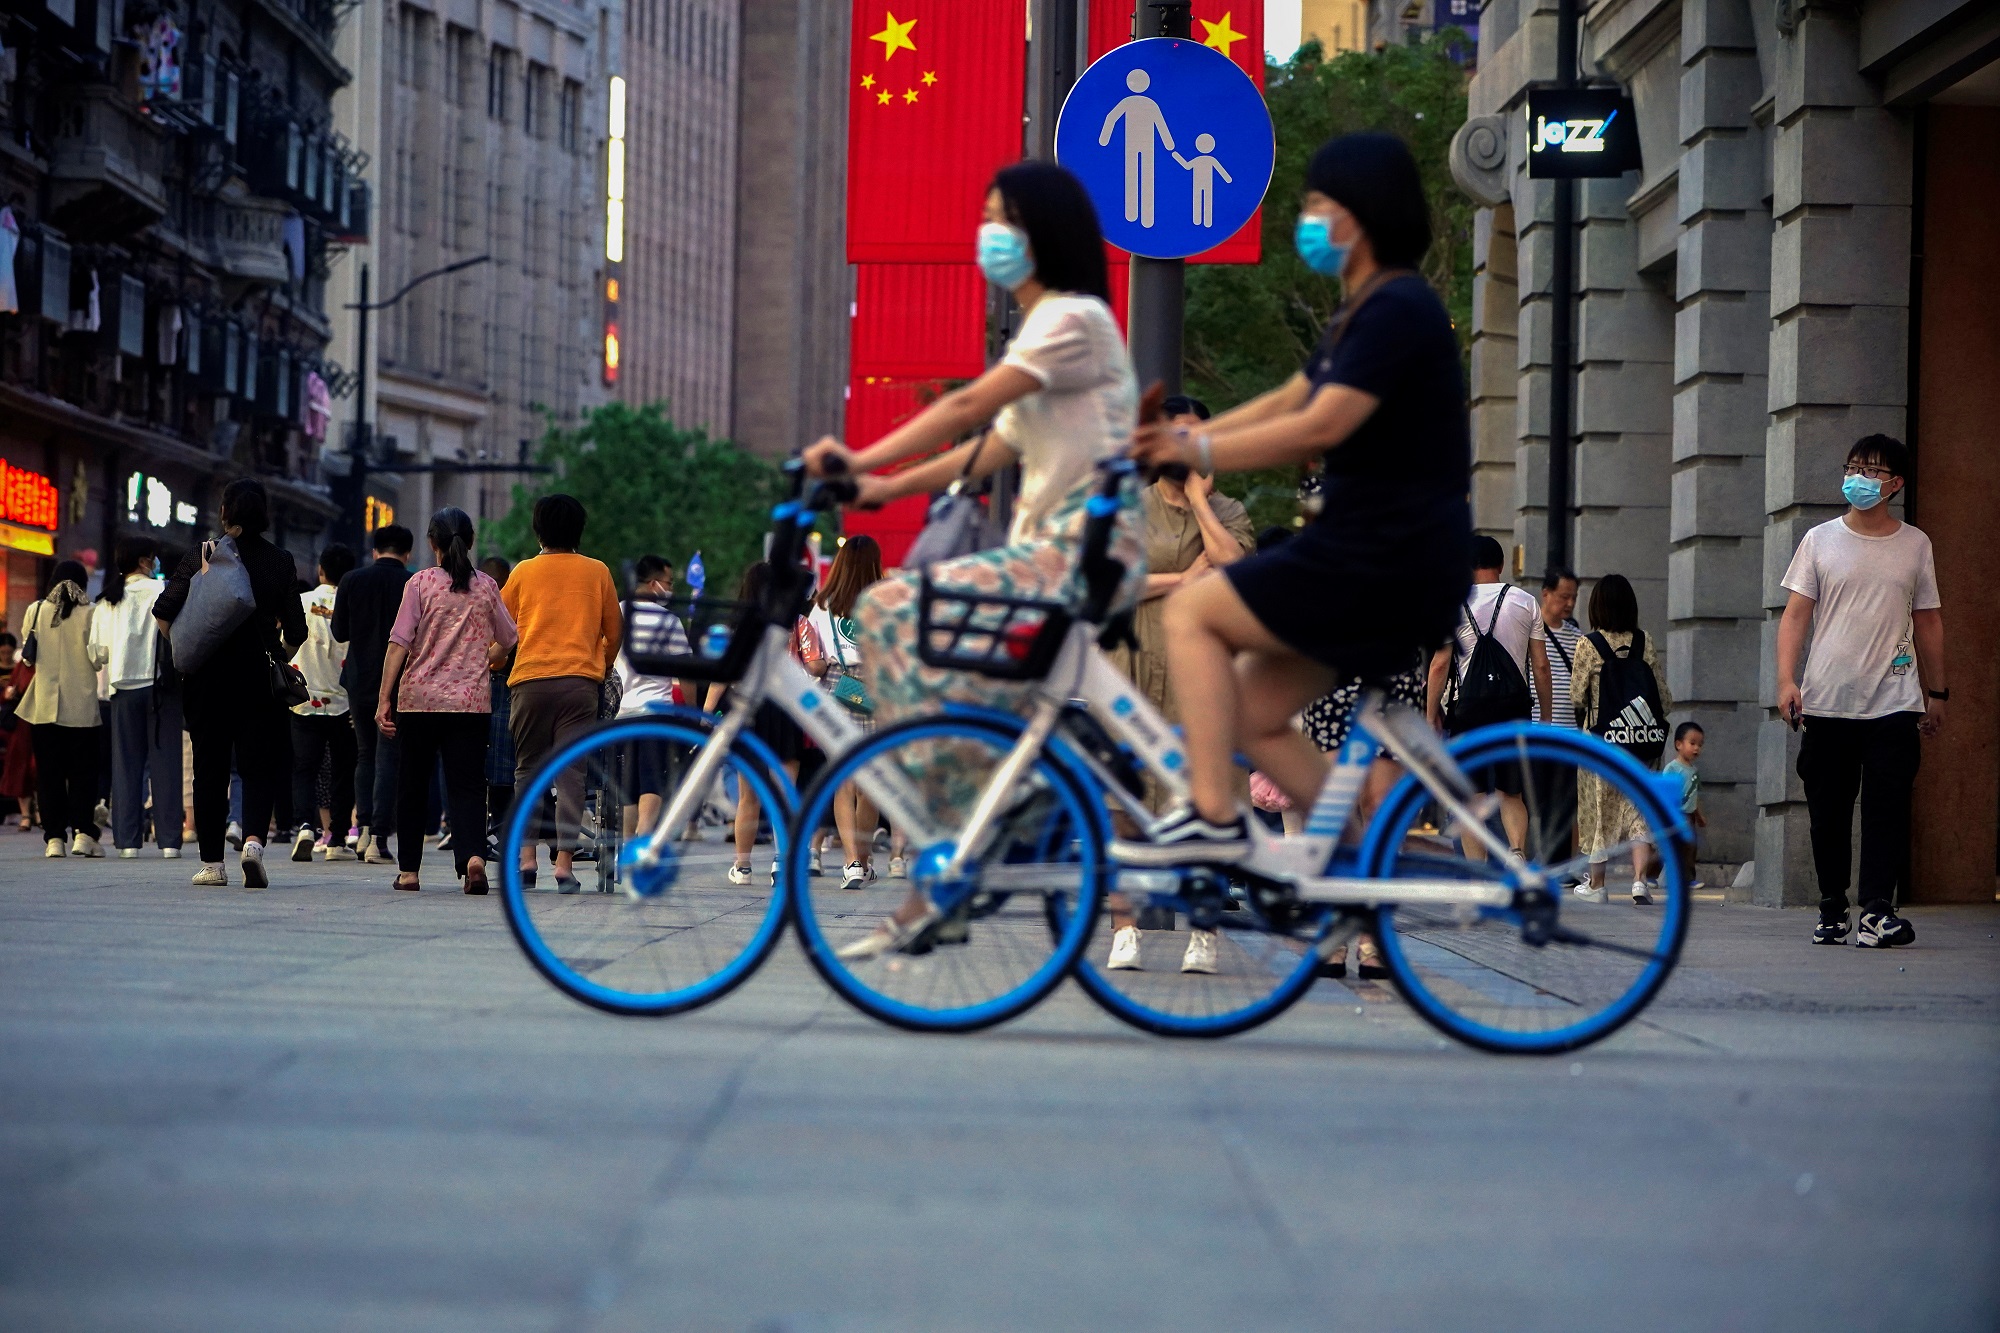 أشخاص يرتدون الكمامات ويركبون درجات في أحد الشوارع، في شنغهاي، الصين، 10 أيار/ مايو 2021. (رويترز)